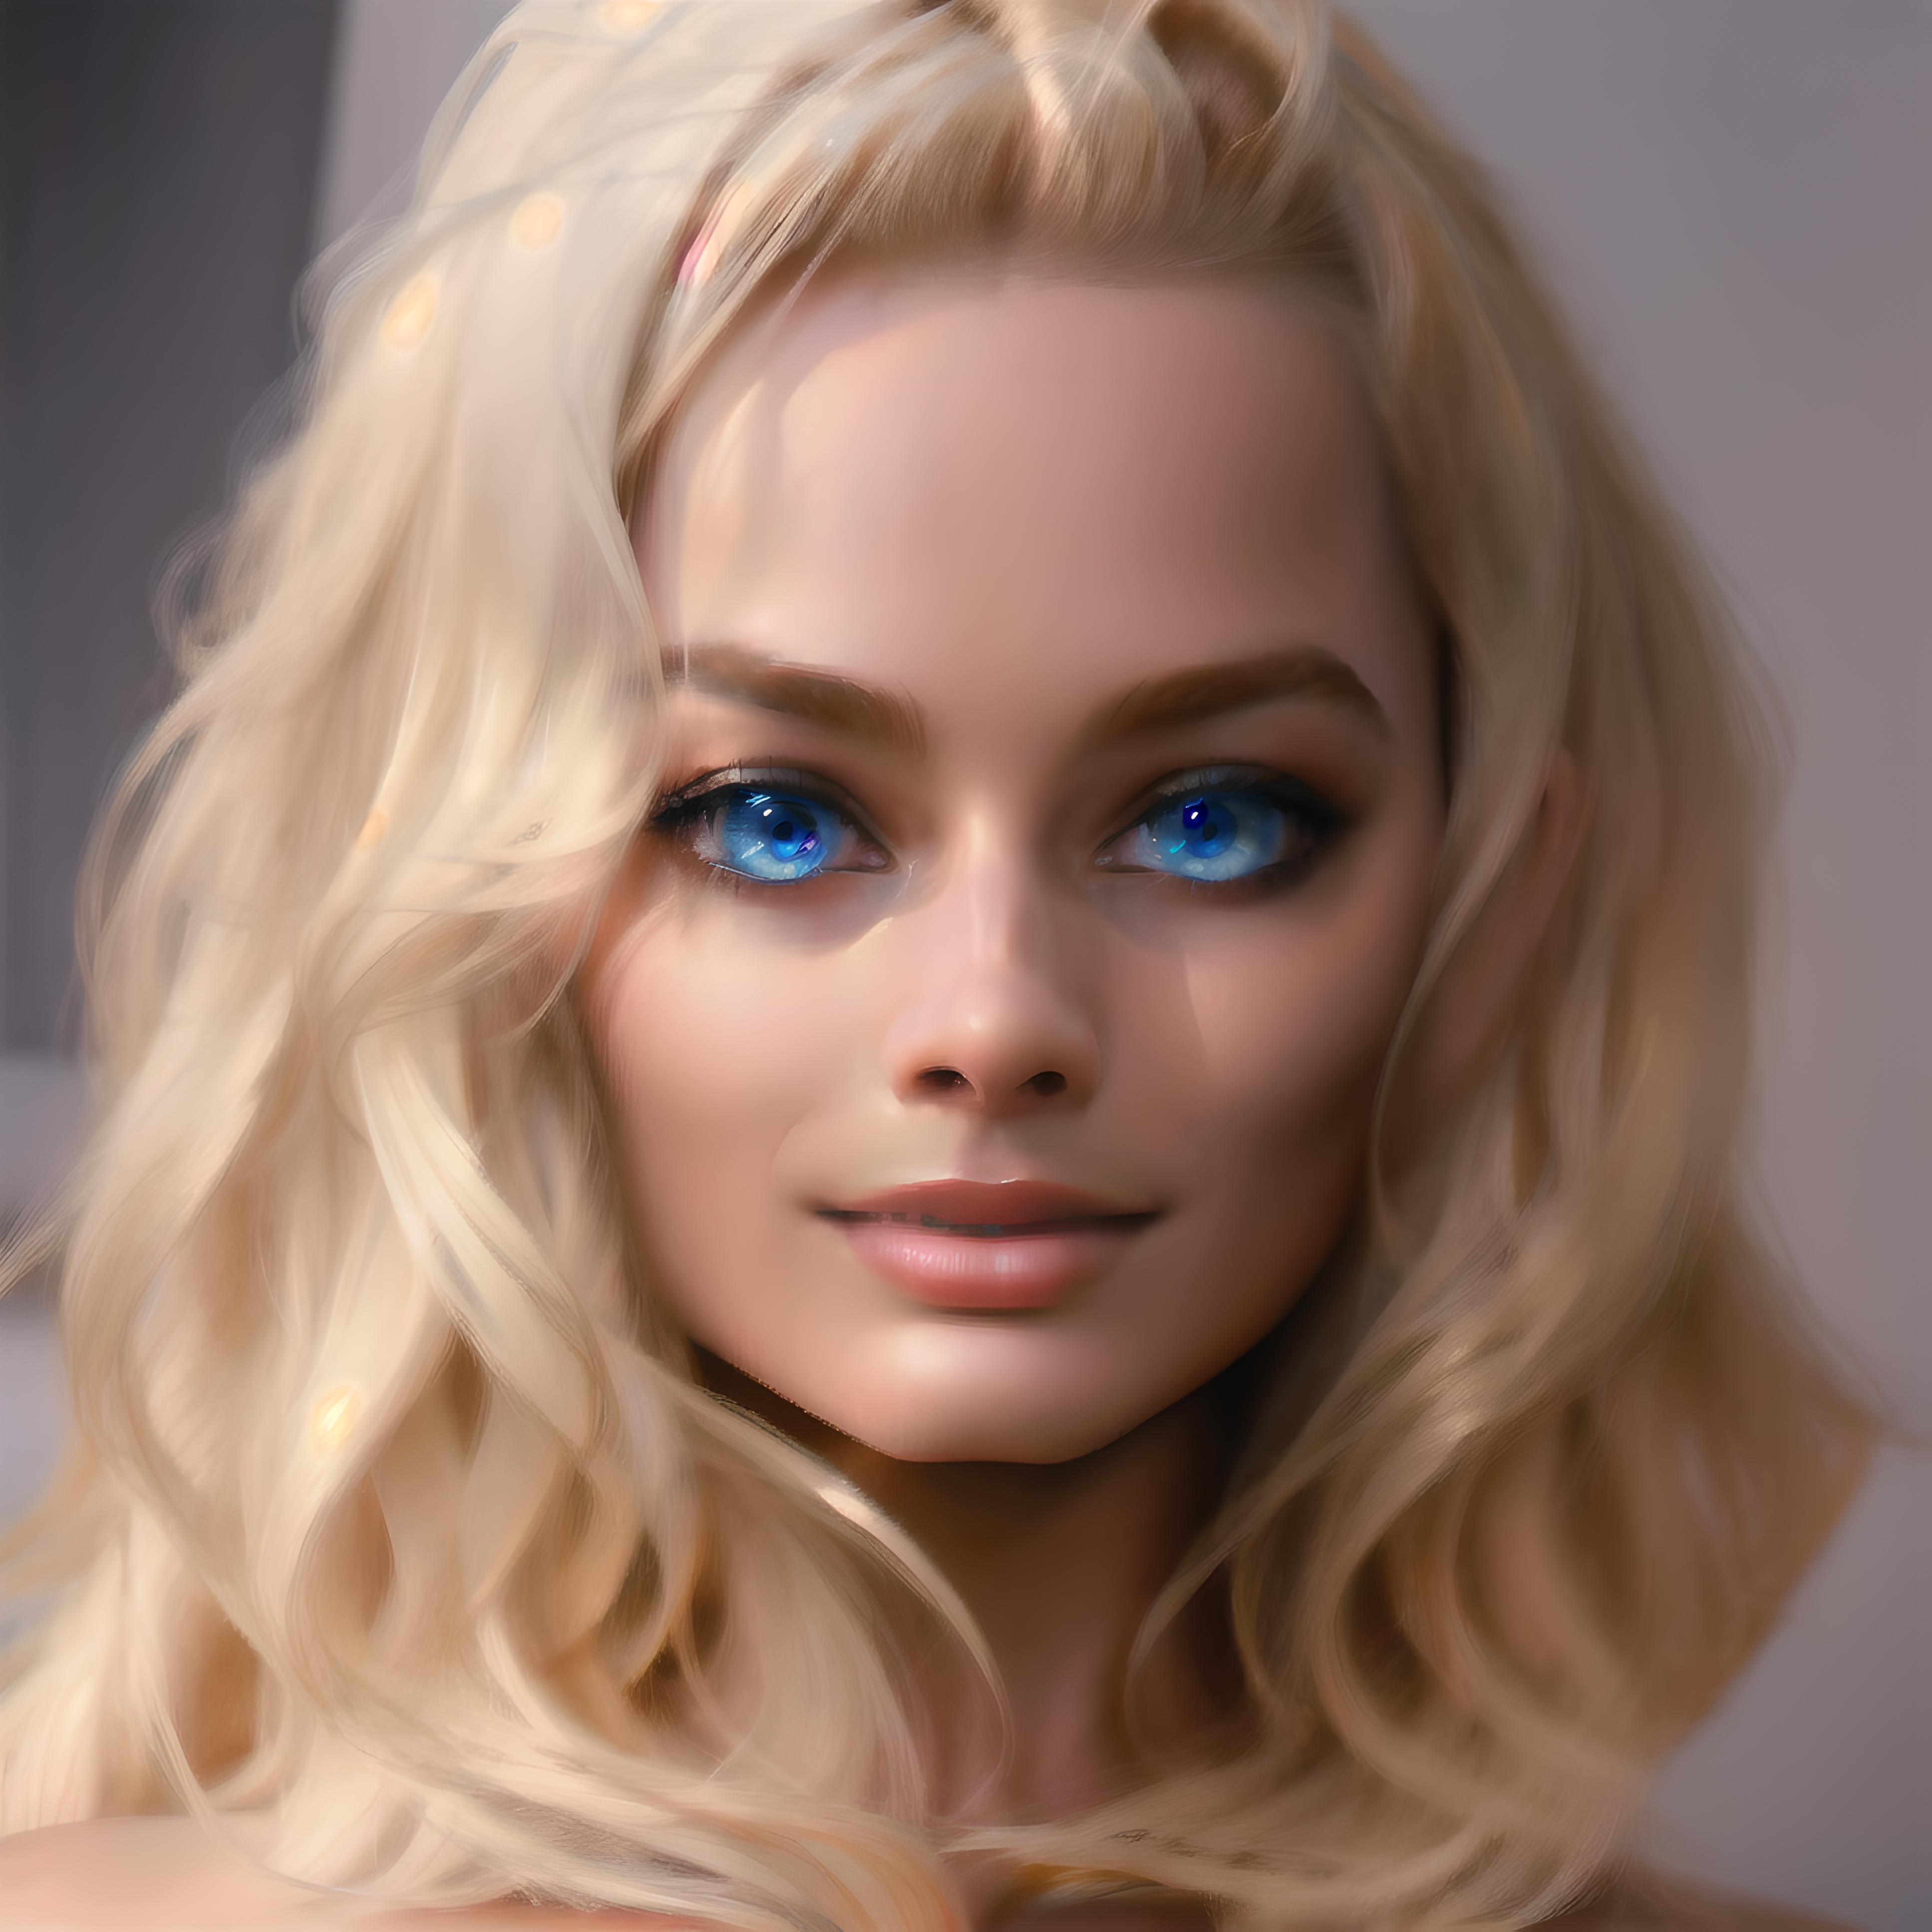 Margot Robbie (Face) image by steffangund